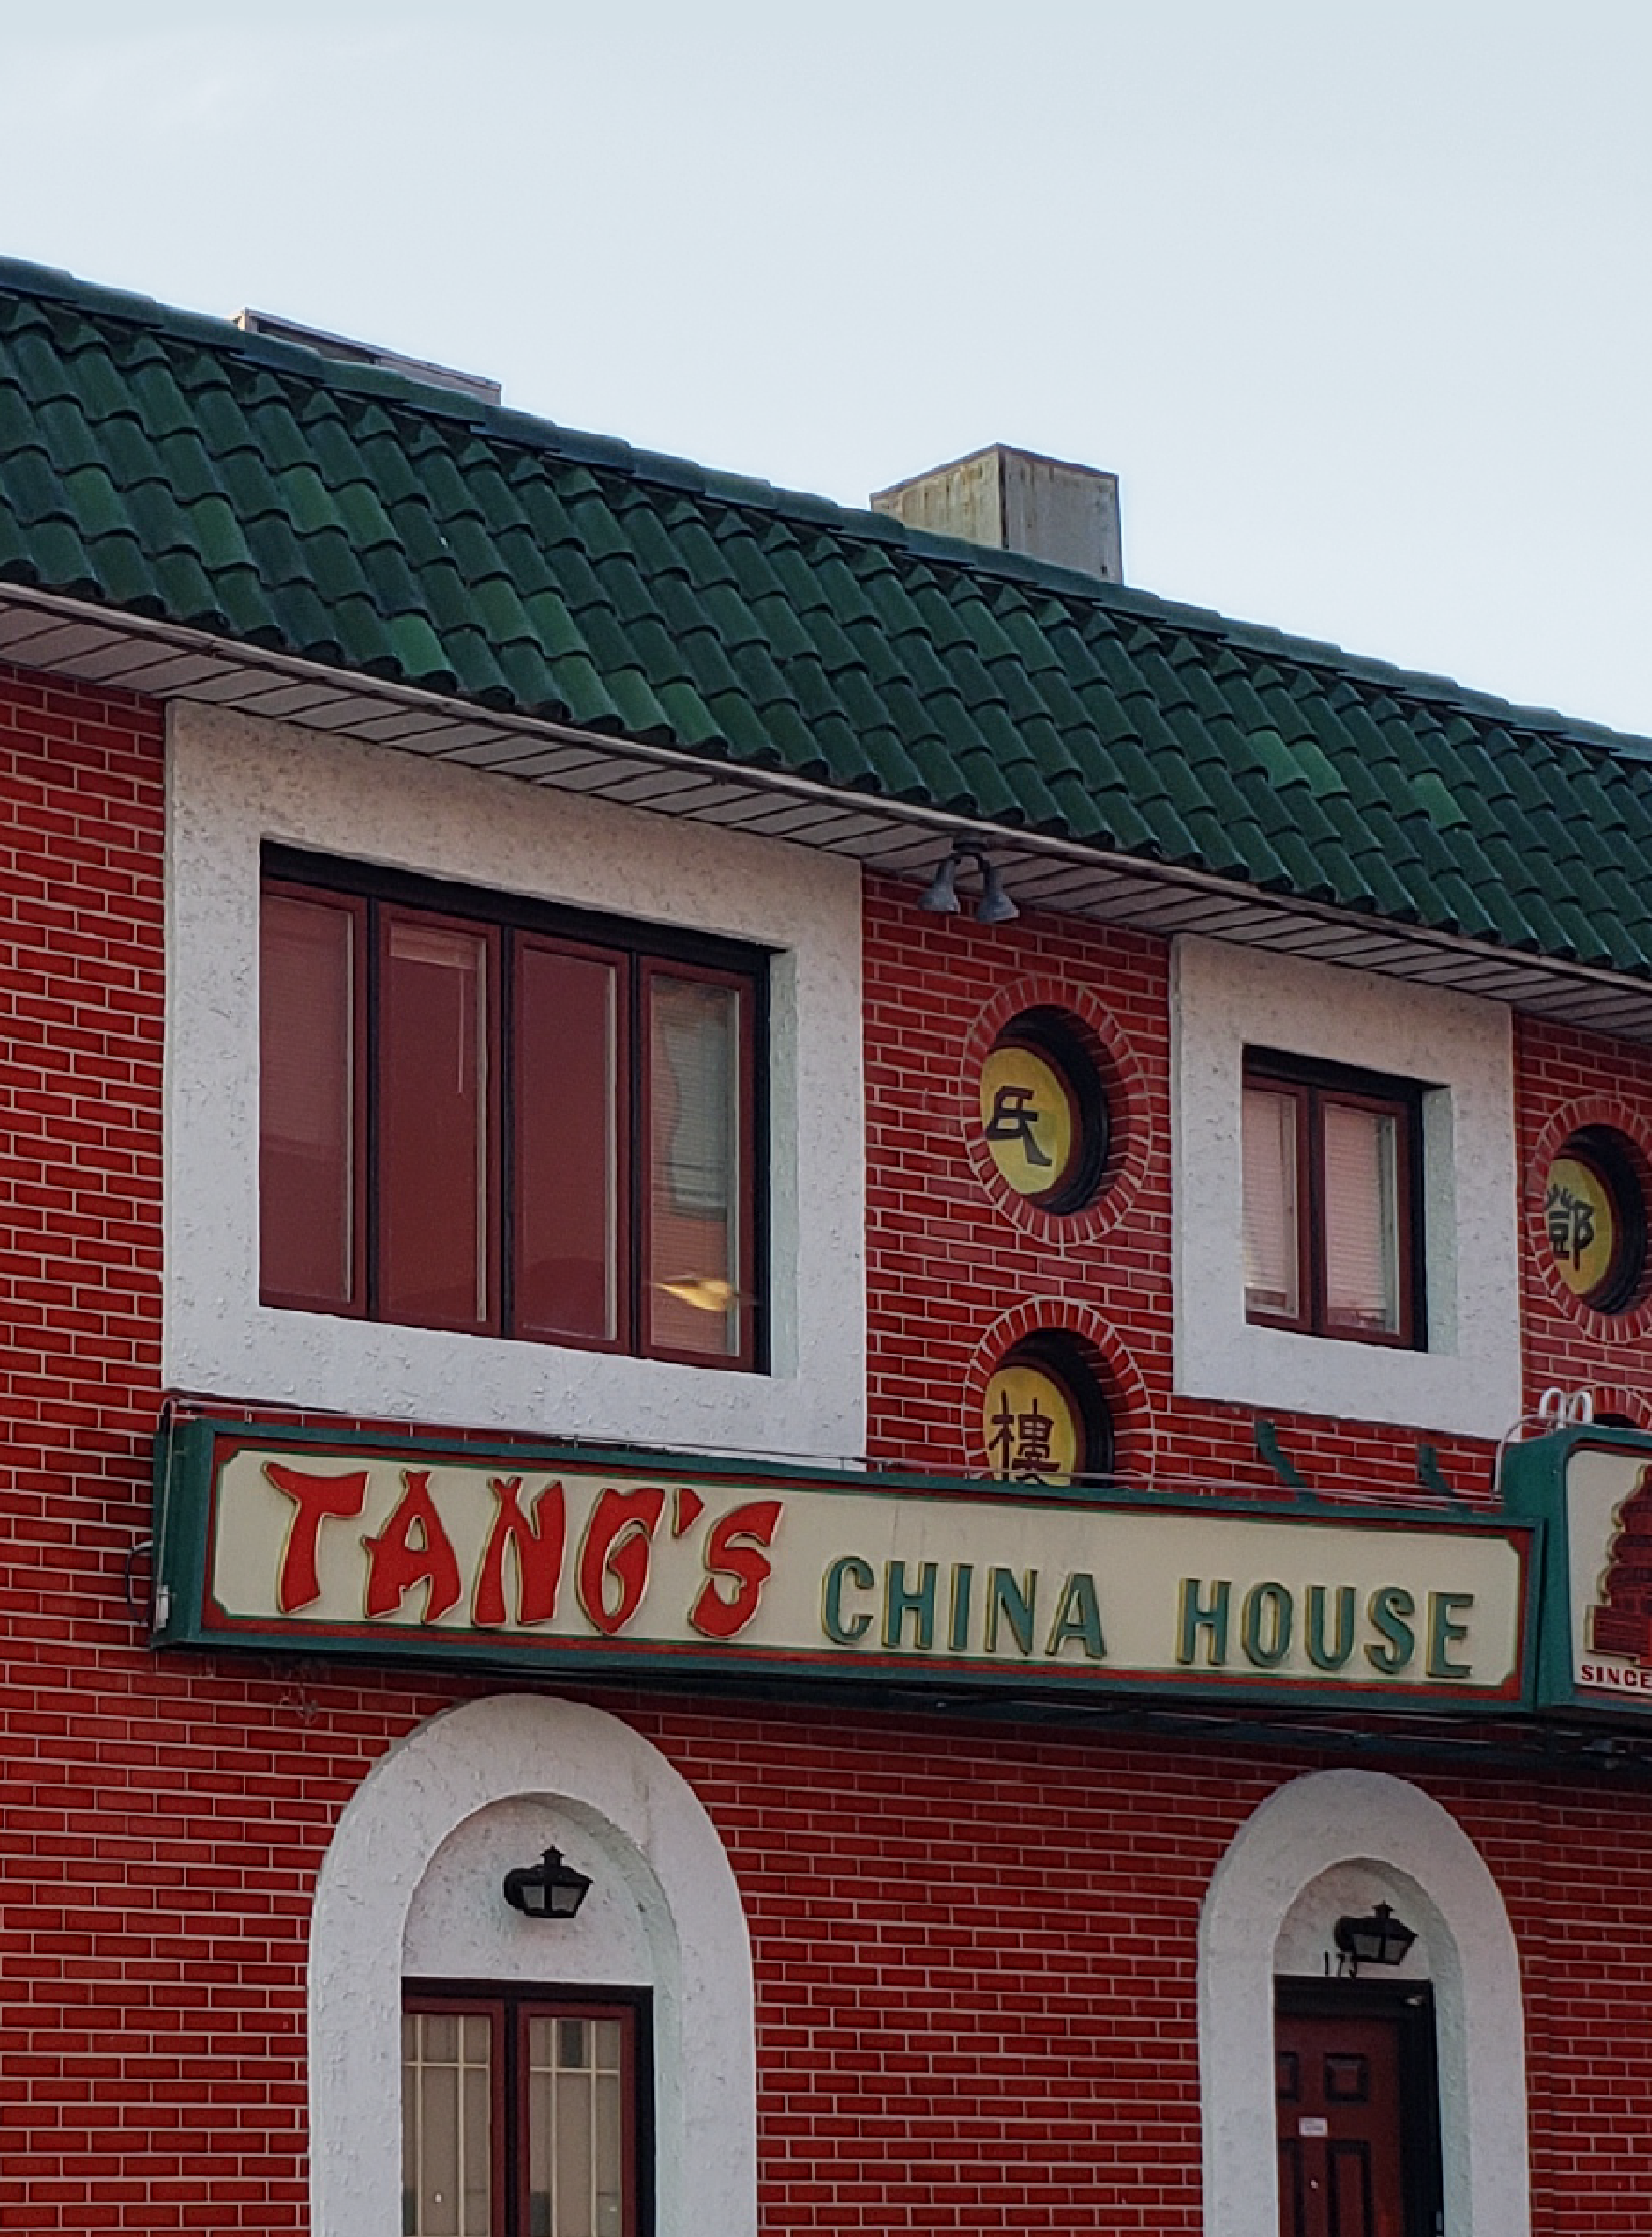 Tangs' China House